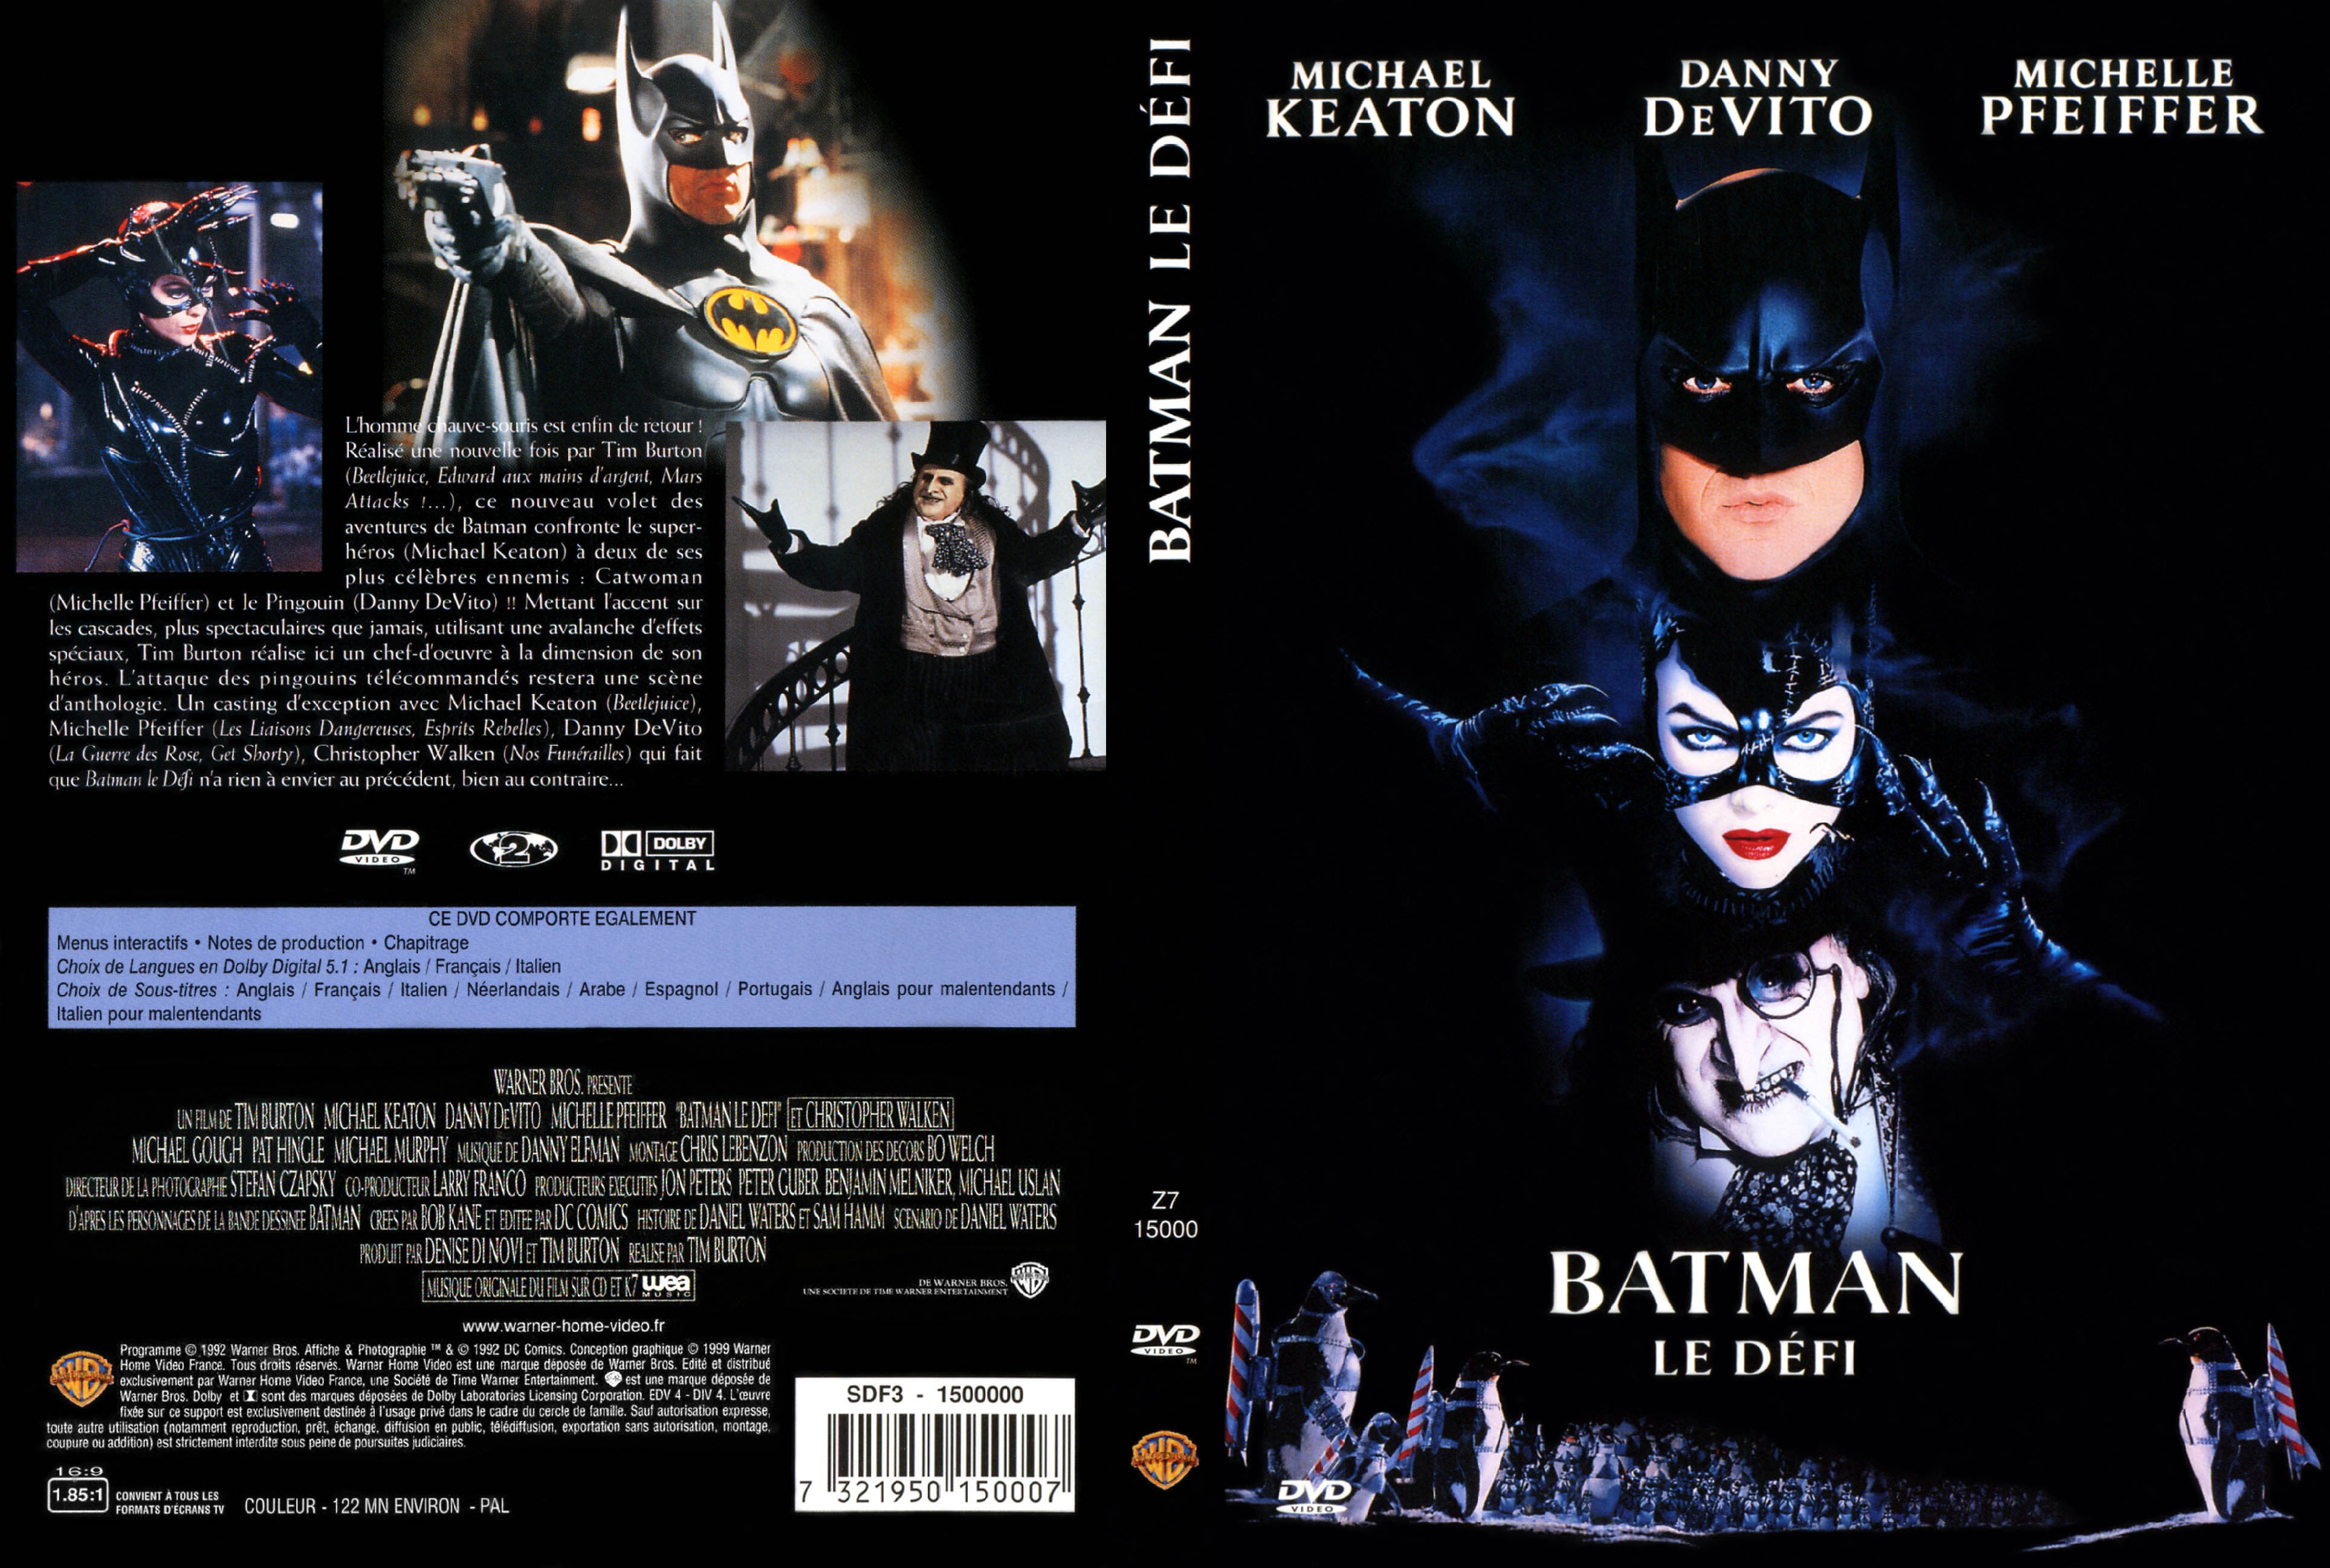 Jaquette DVD Batman le defi